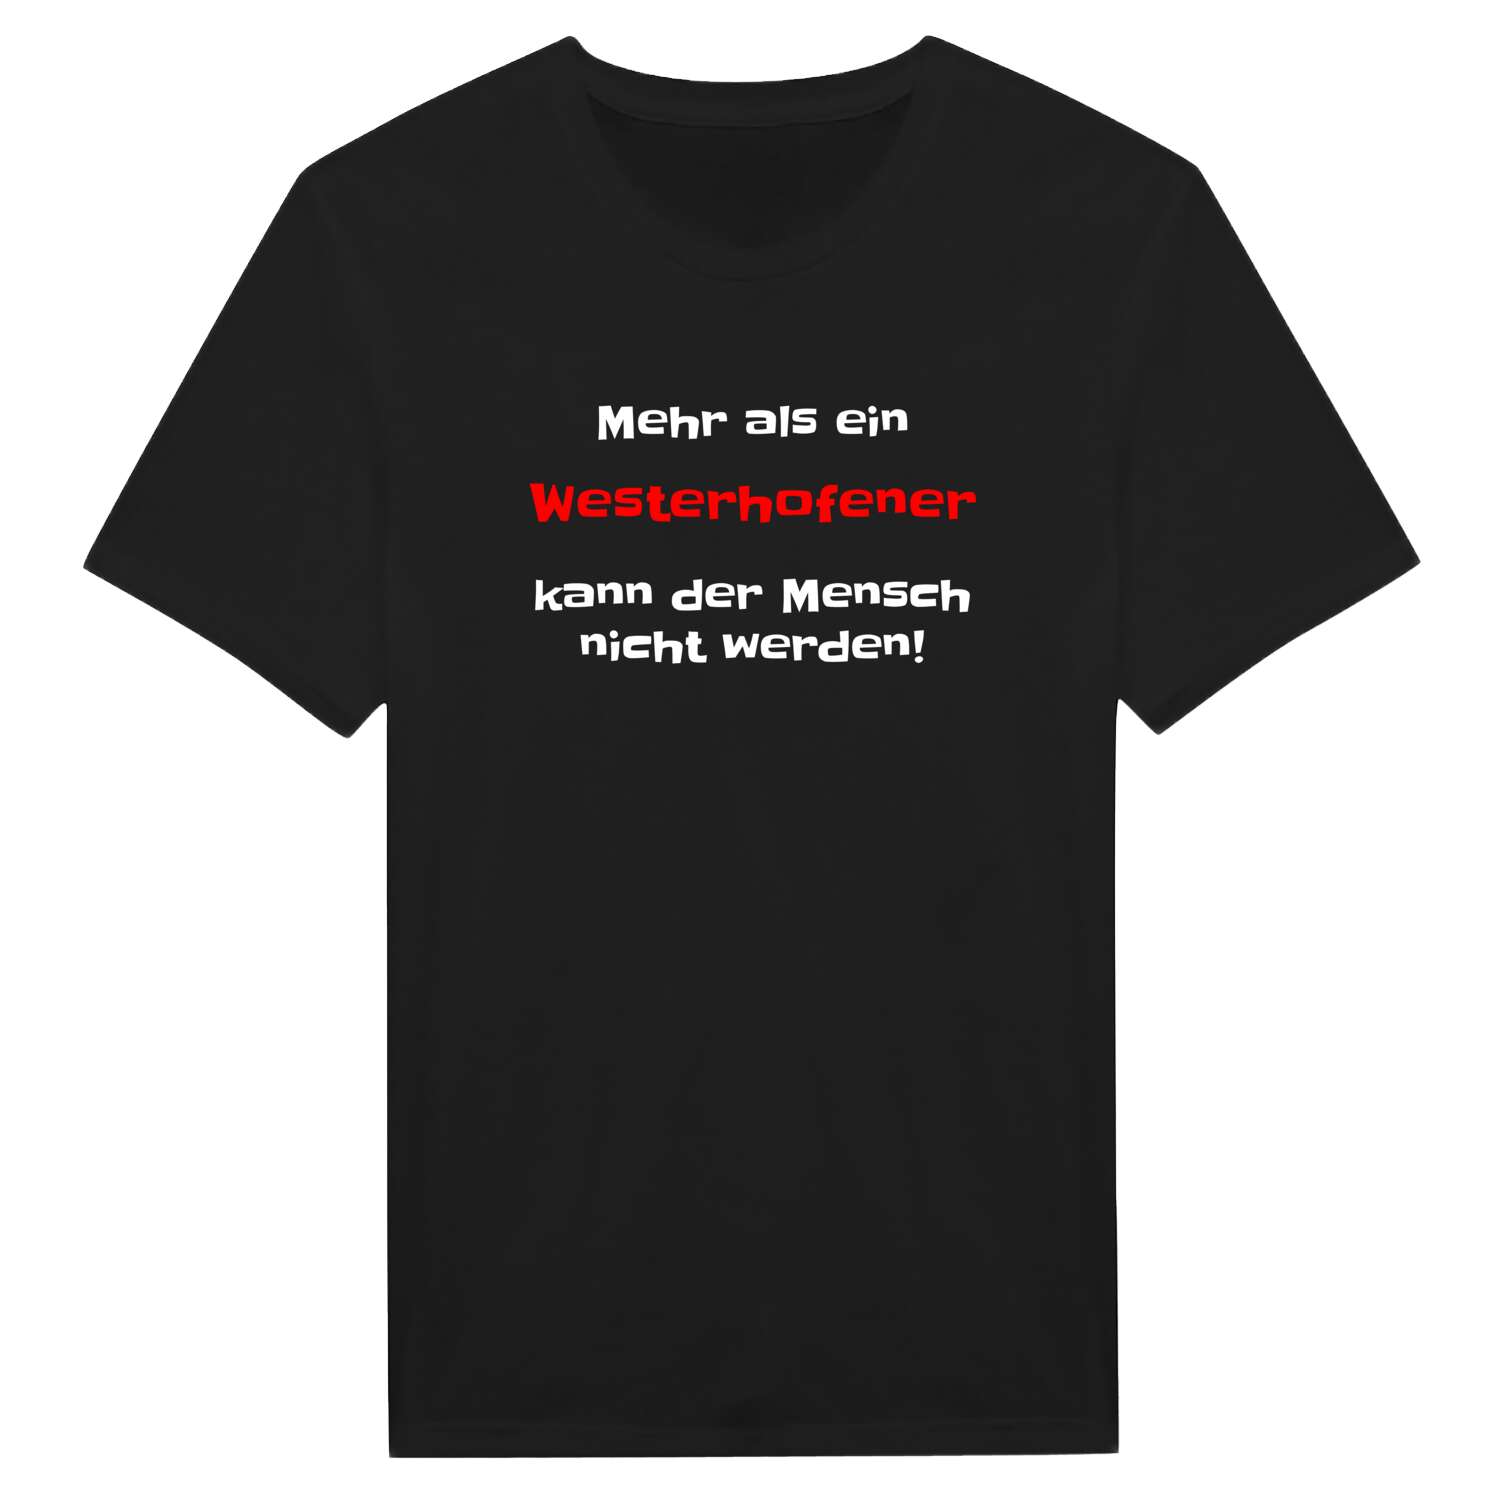 Westerhofen T-Shirt »Mehr als ein«